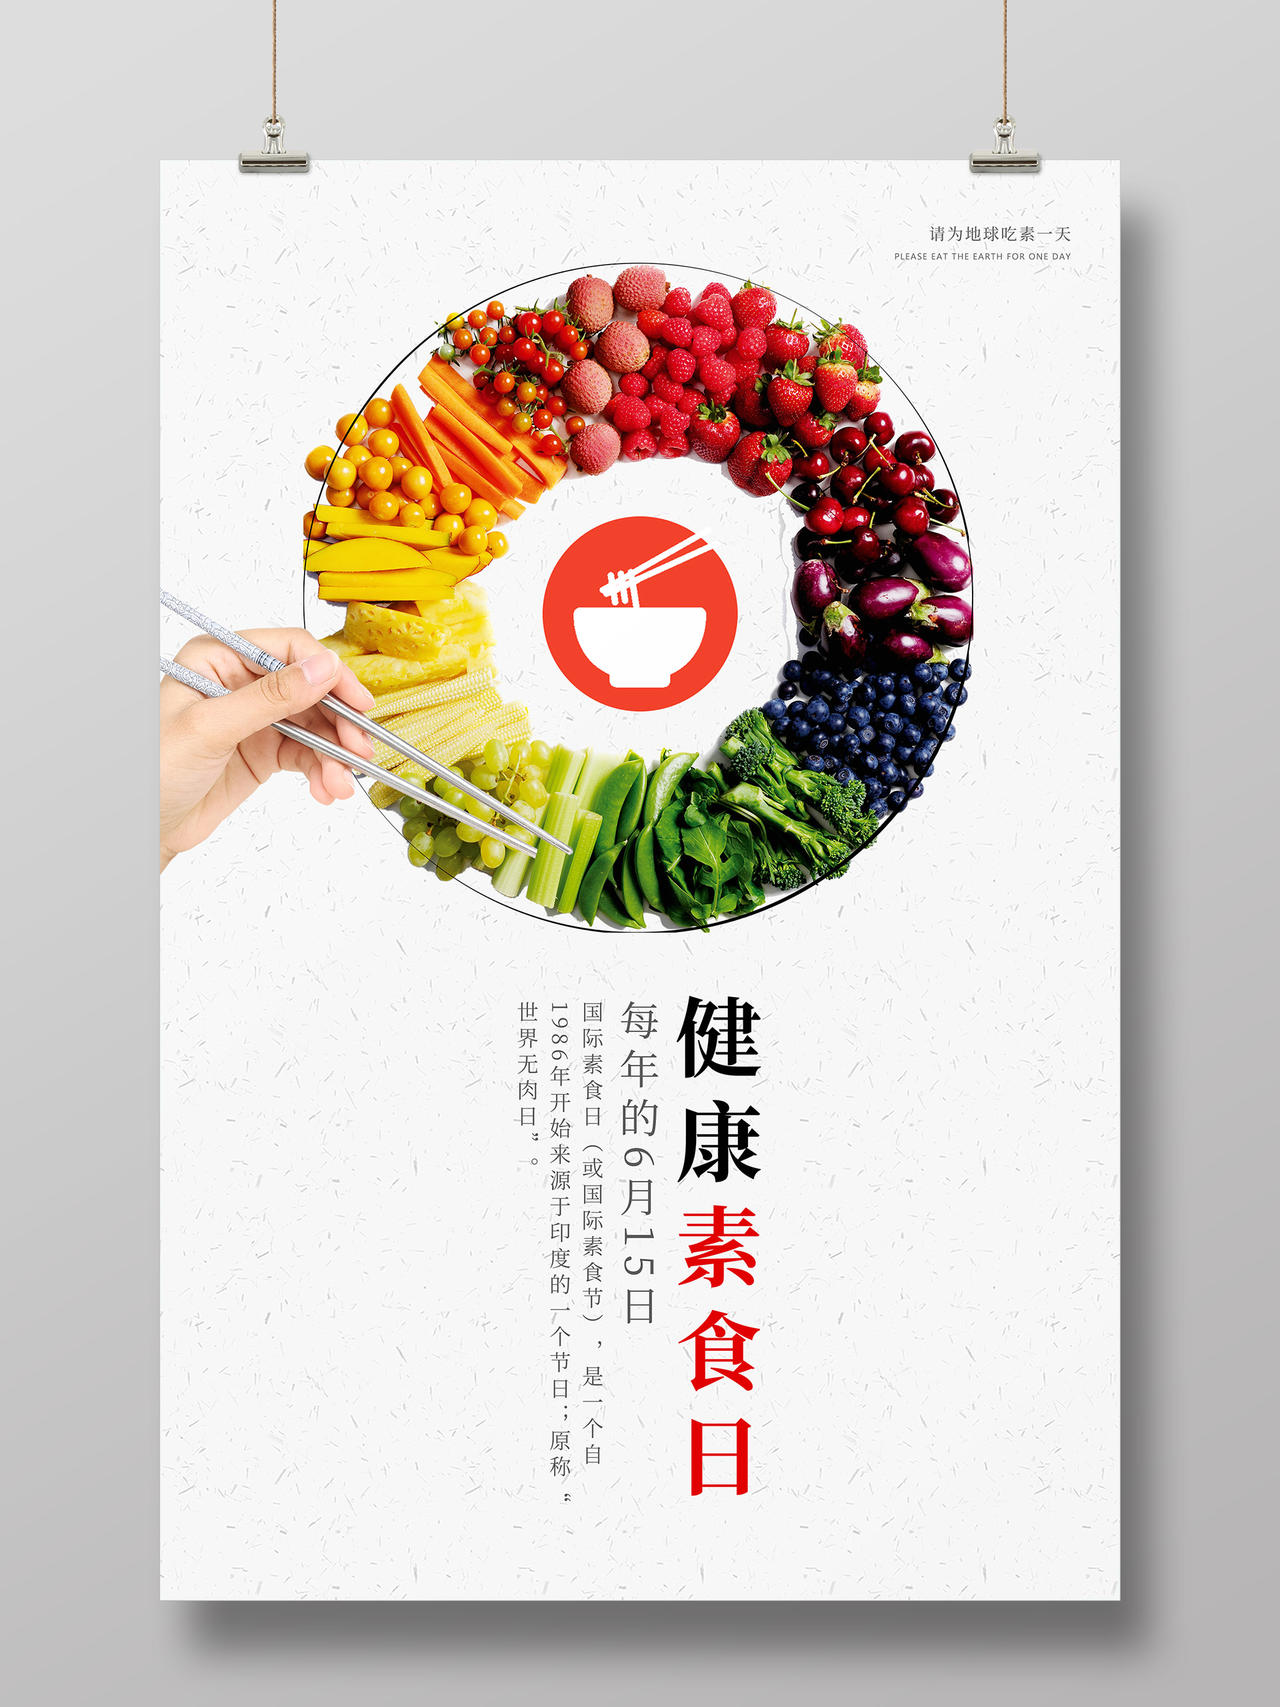 水果蔬菜绿色简约素食国际素食日海报健康素食日